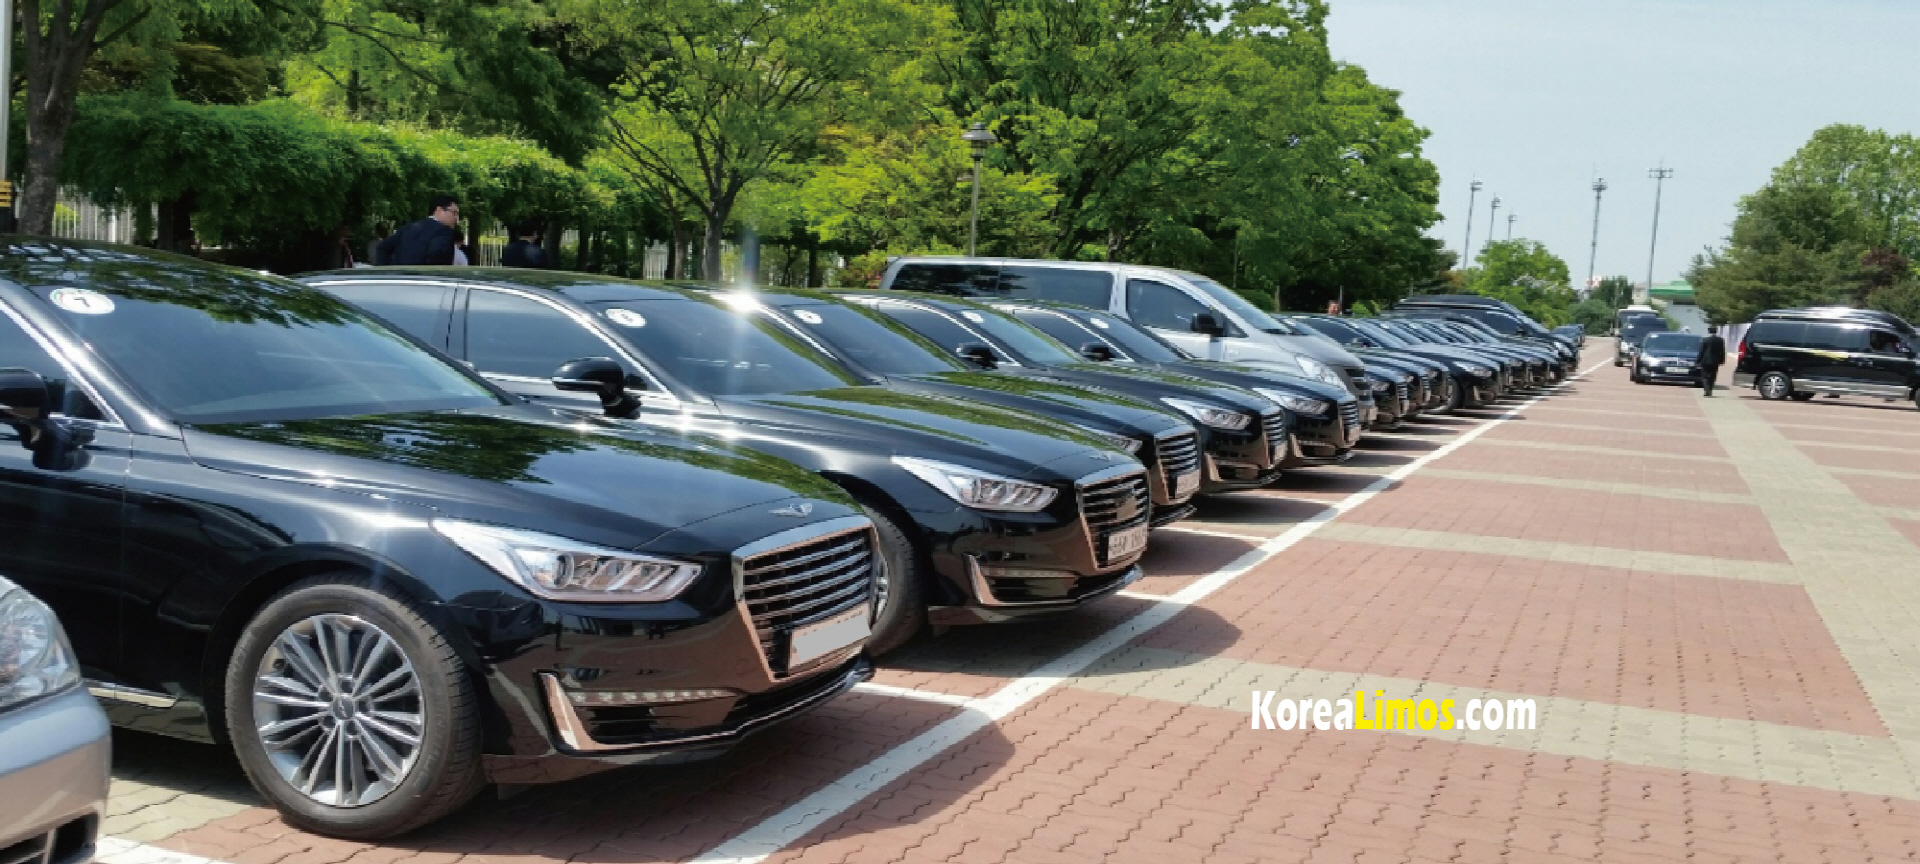 Korea car service